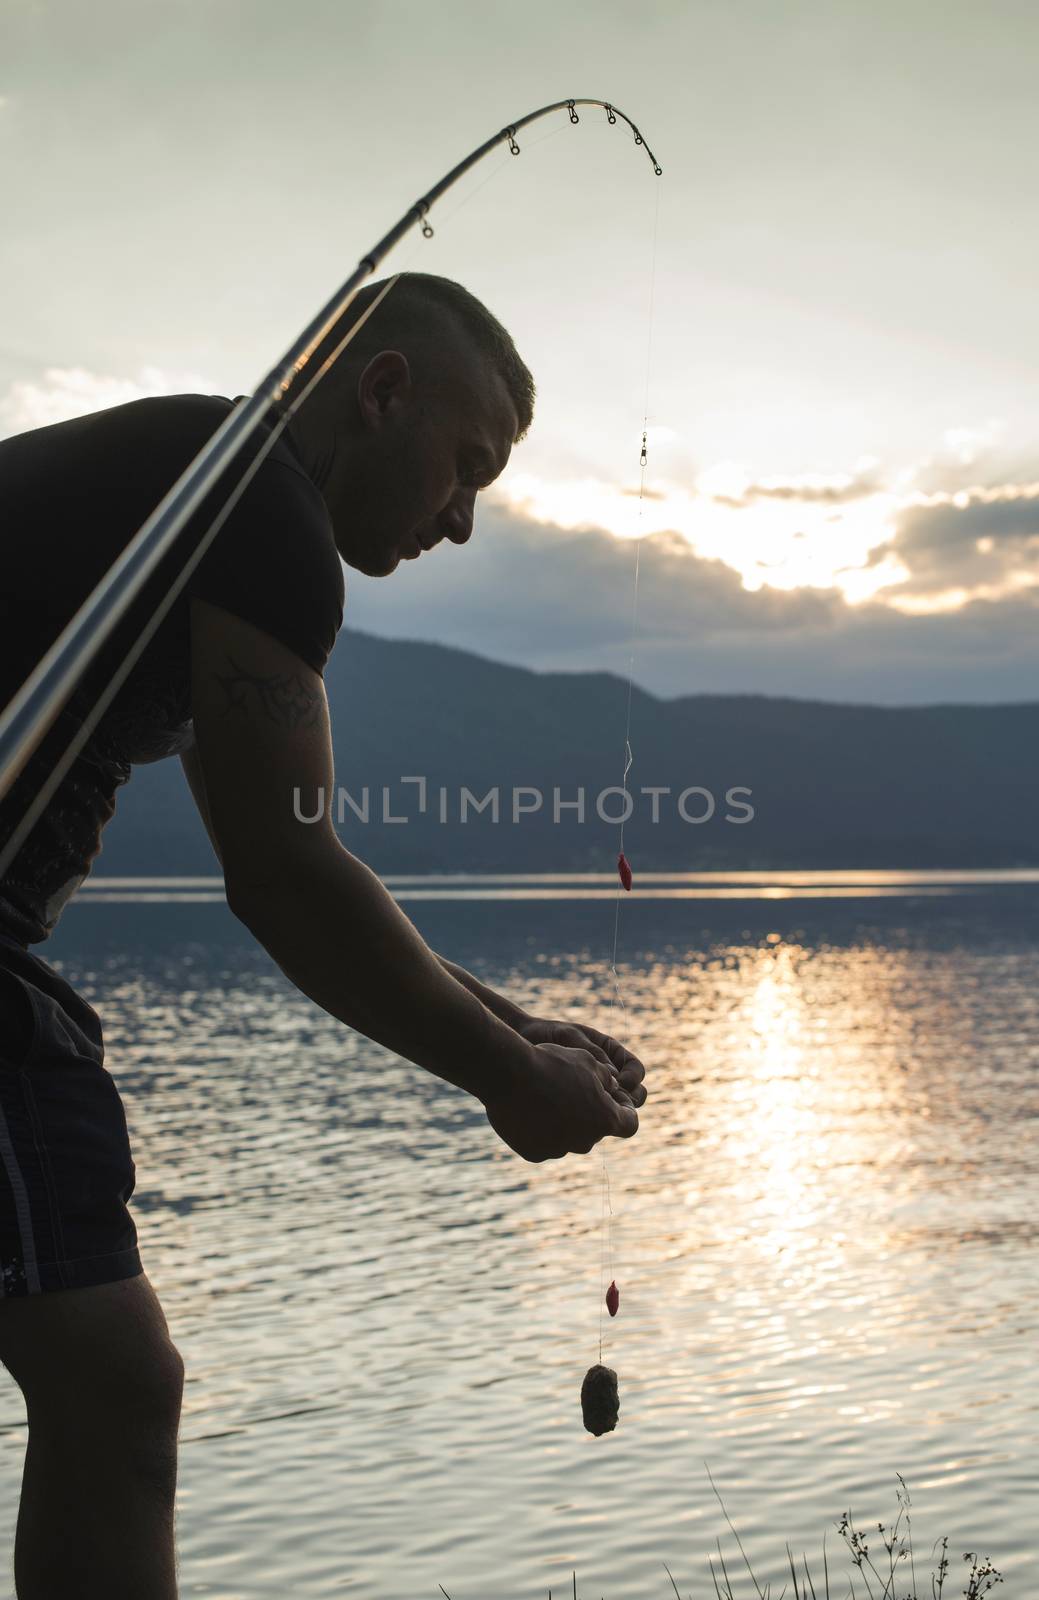 Man on fishing with rod. Mountain lake